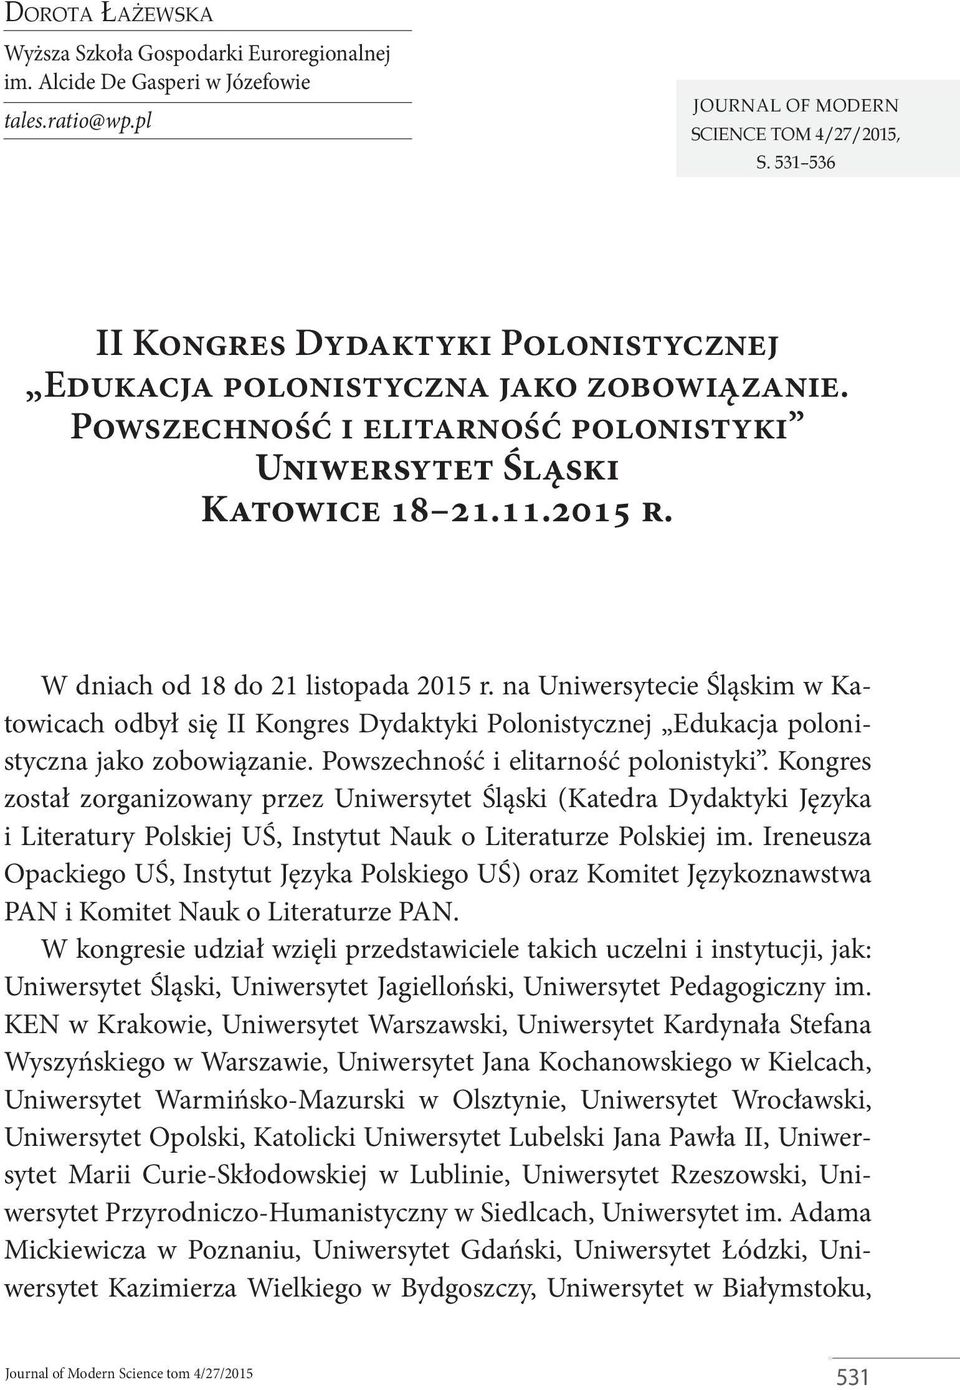 W dniach od 18 do 21 listopada 2015 r. na Uniwersytecie Śląskim w Katowicach odbył się II Kongres Dydaktyki Polonistycznej Edukacja polonistyczna jako zobowiązanie.